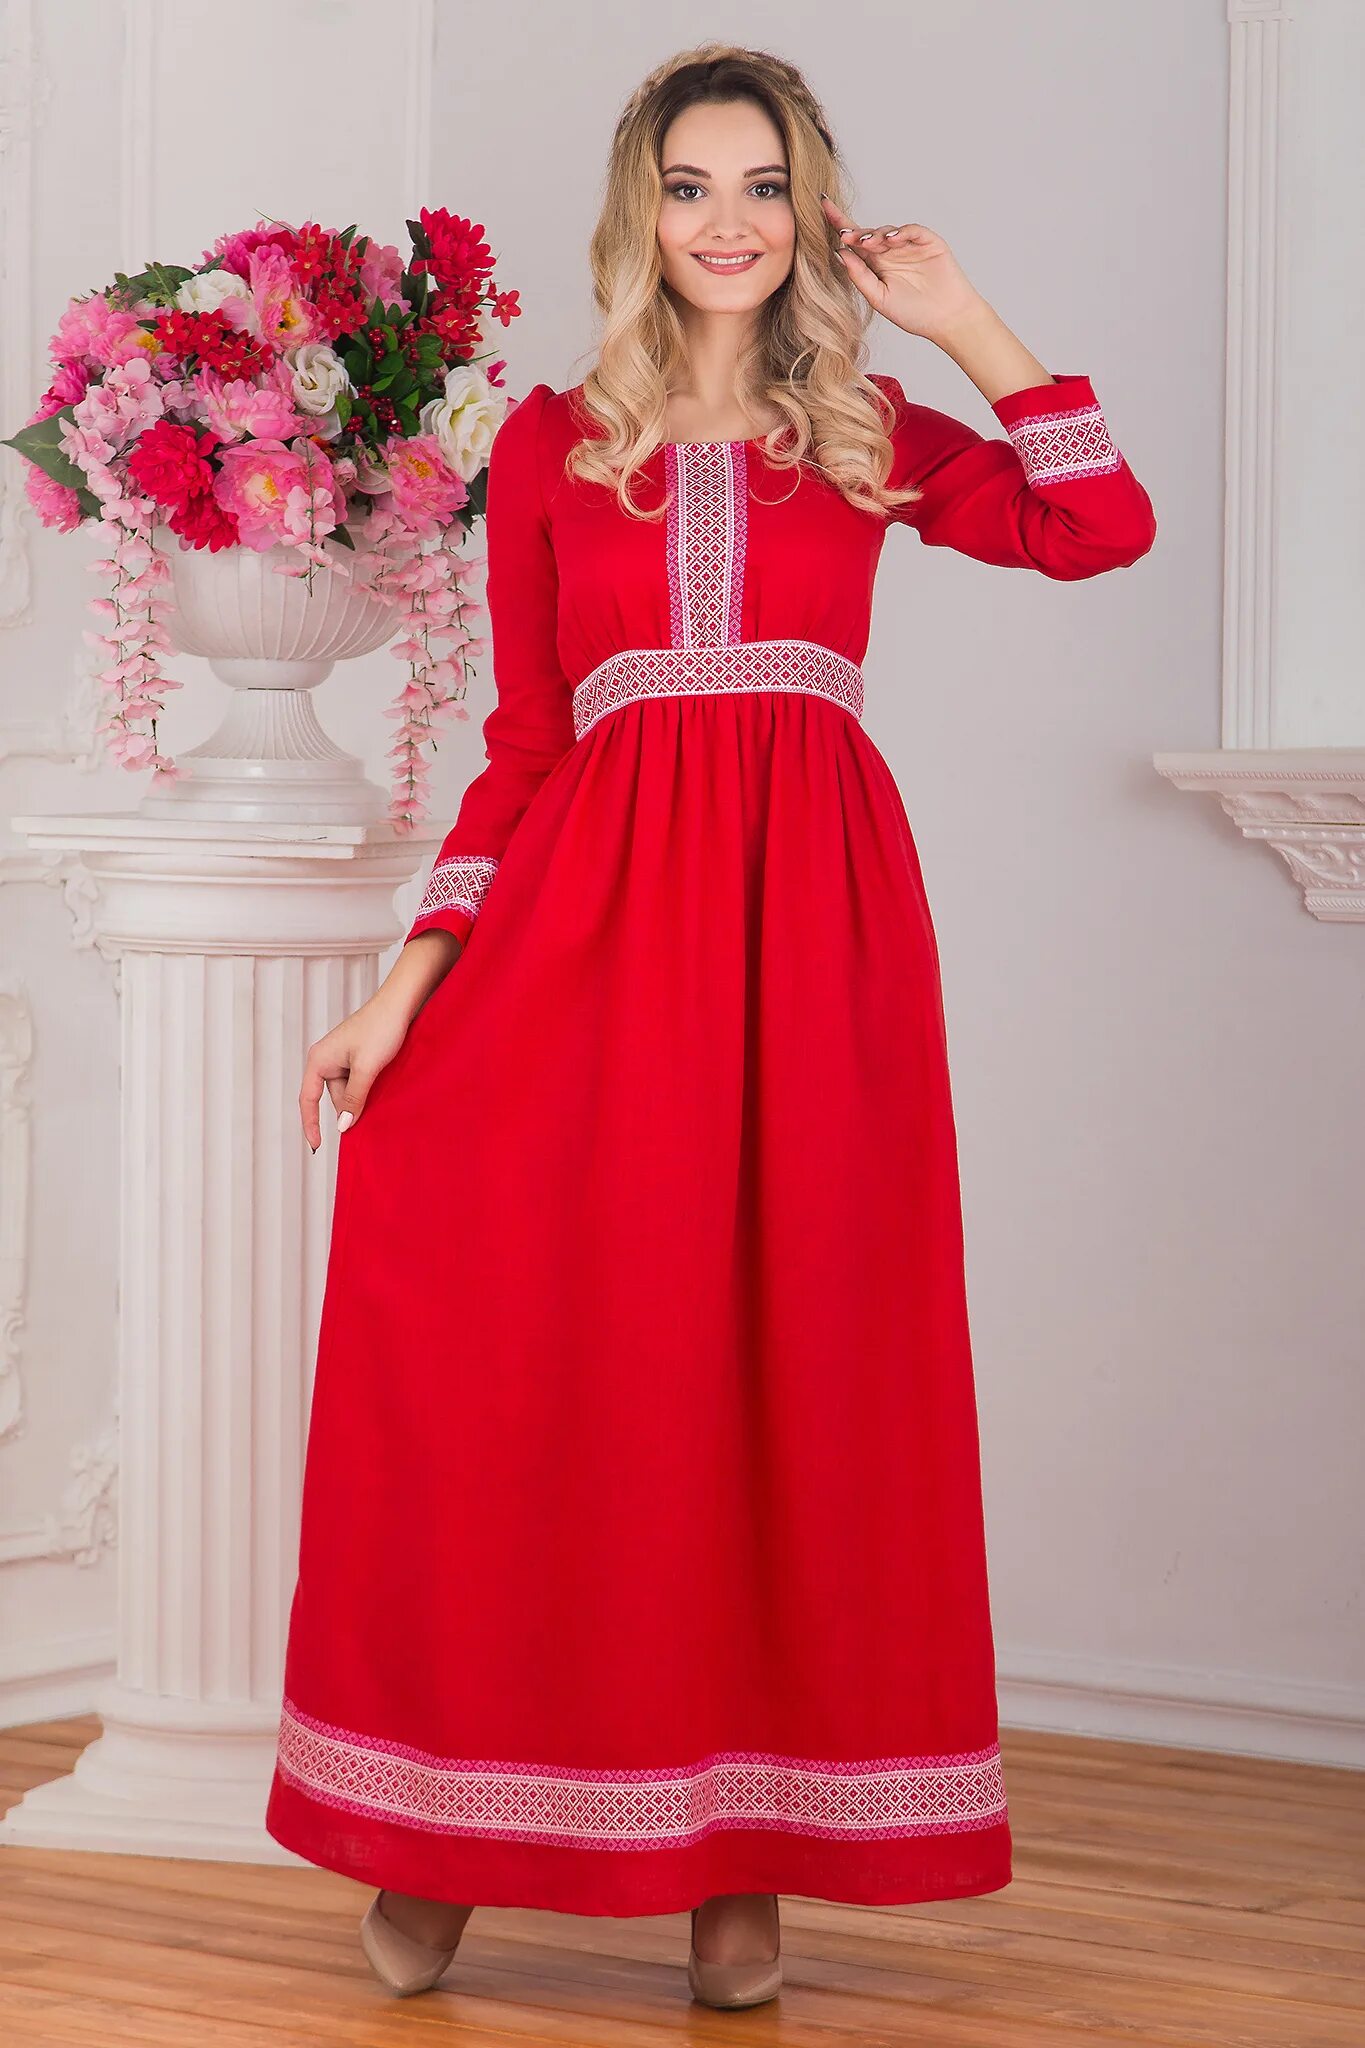 Красное платье. Платье в Славянском стиле. Платье в русском стиле. Славянское платье красное.